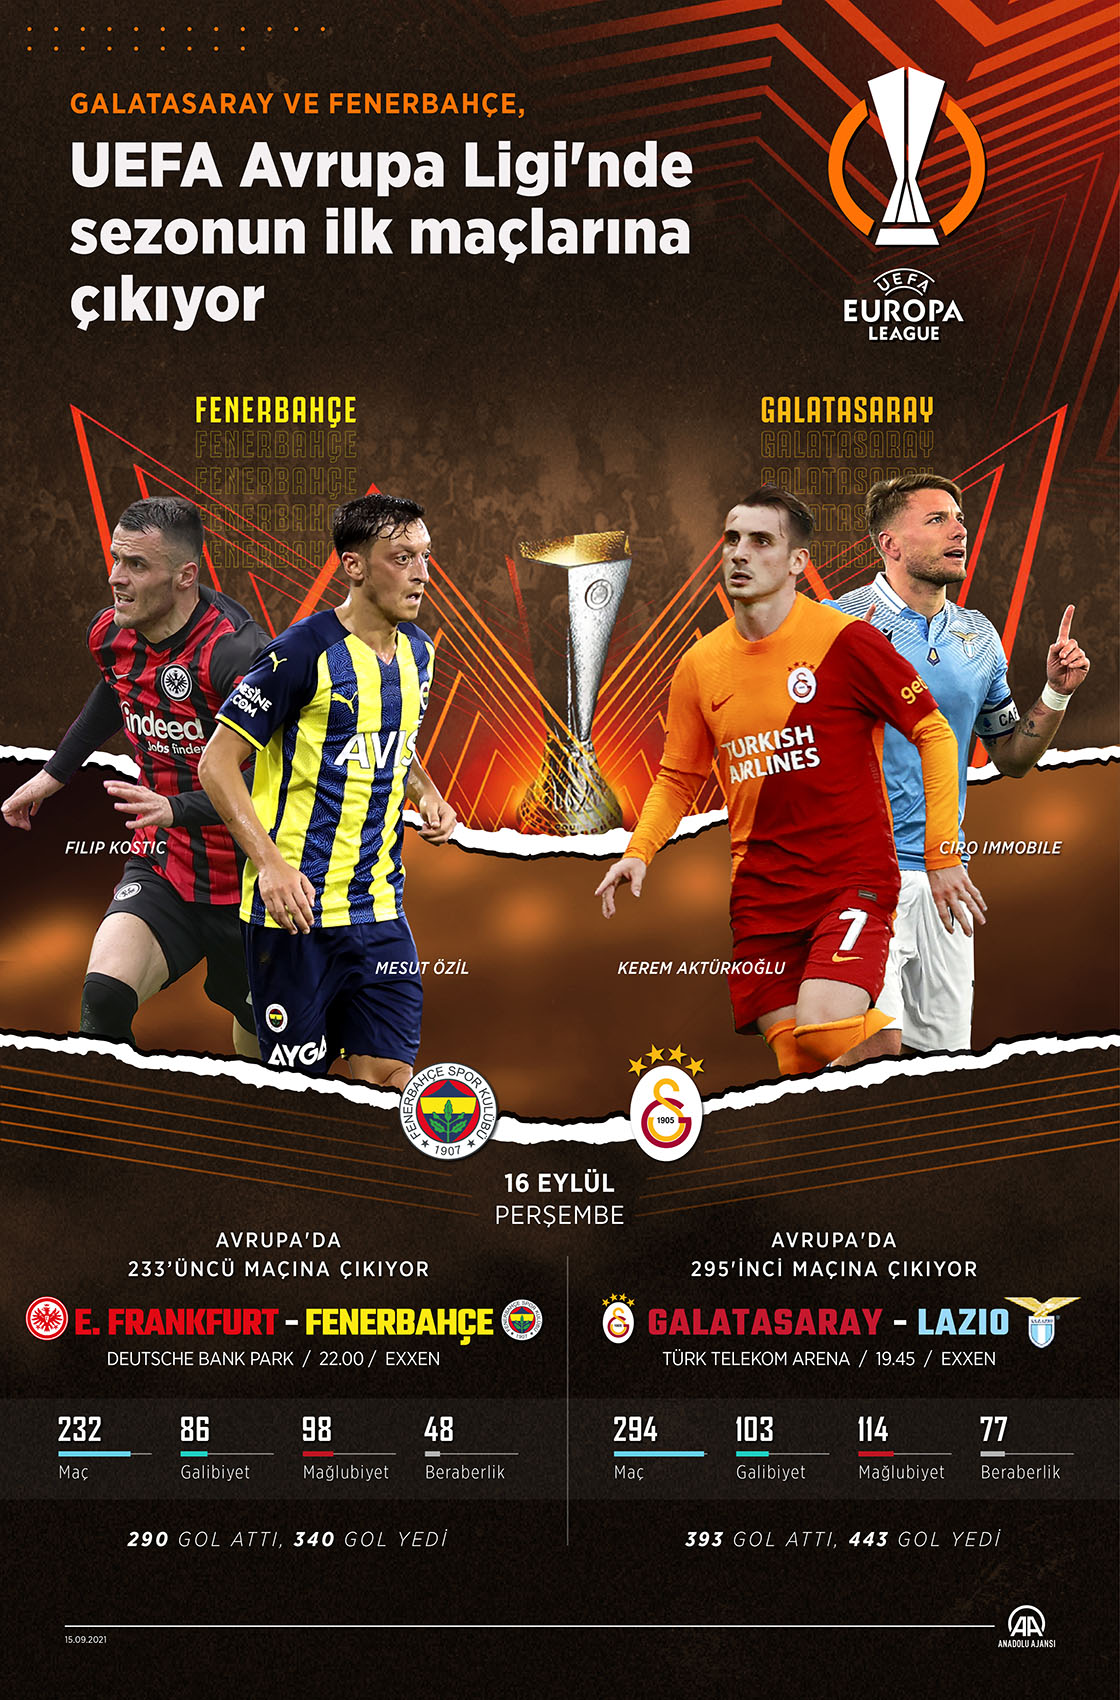 Galatasaray ve Fenerbahçe, UEFA Avrupa Ligi'nde sezonun ilk maçlarına çıkıyor